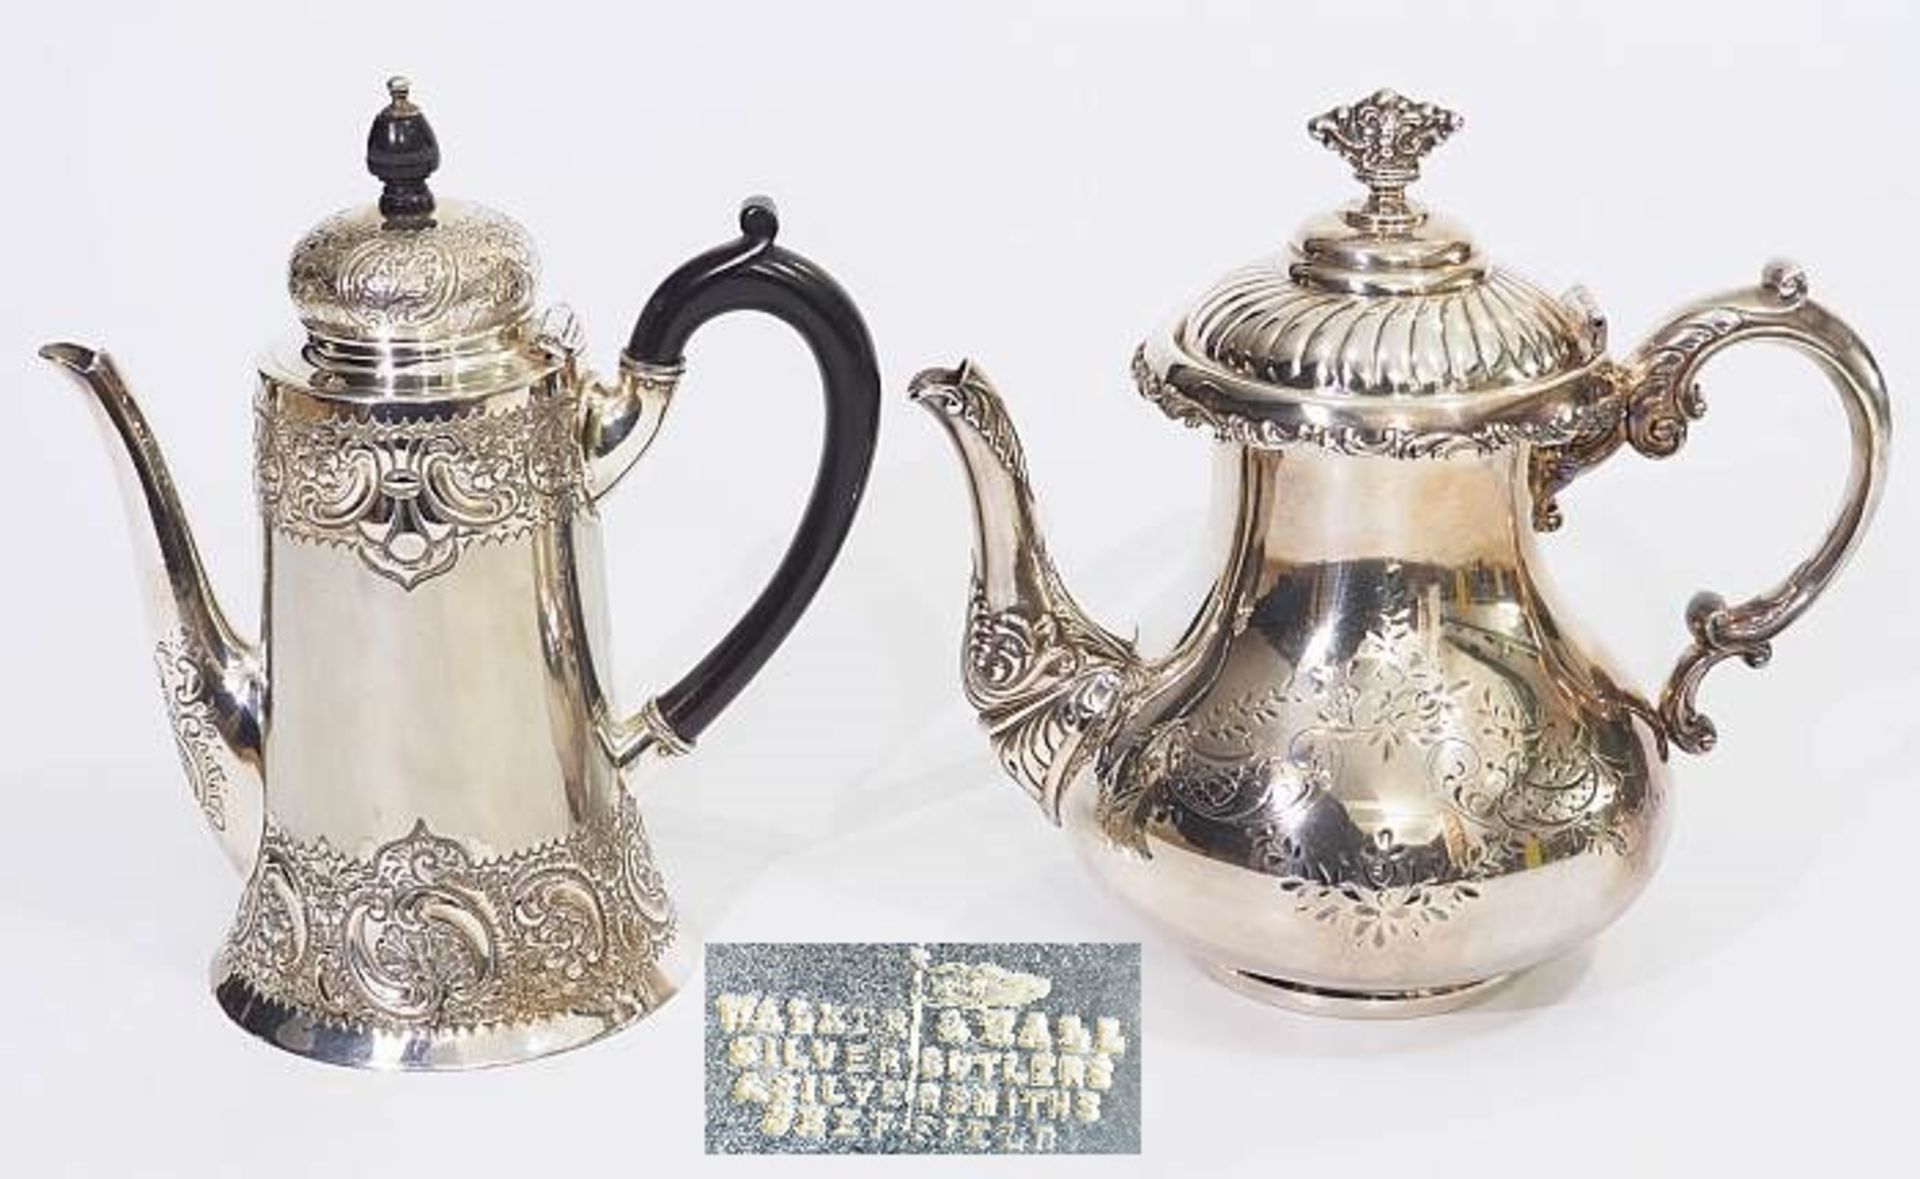 Zwei englische Teekannen, Plated. Zwei englische Teekannen, Plated. Ende 19./Anfang 20. Jahrhundert.